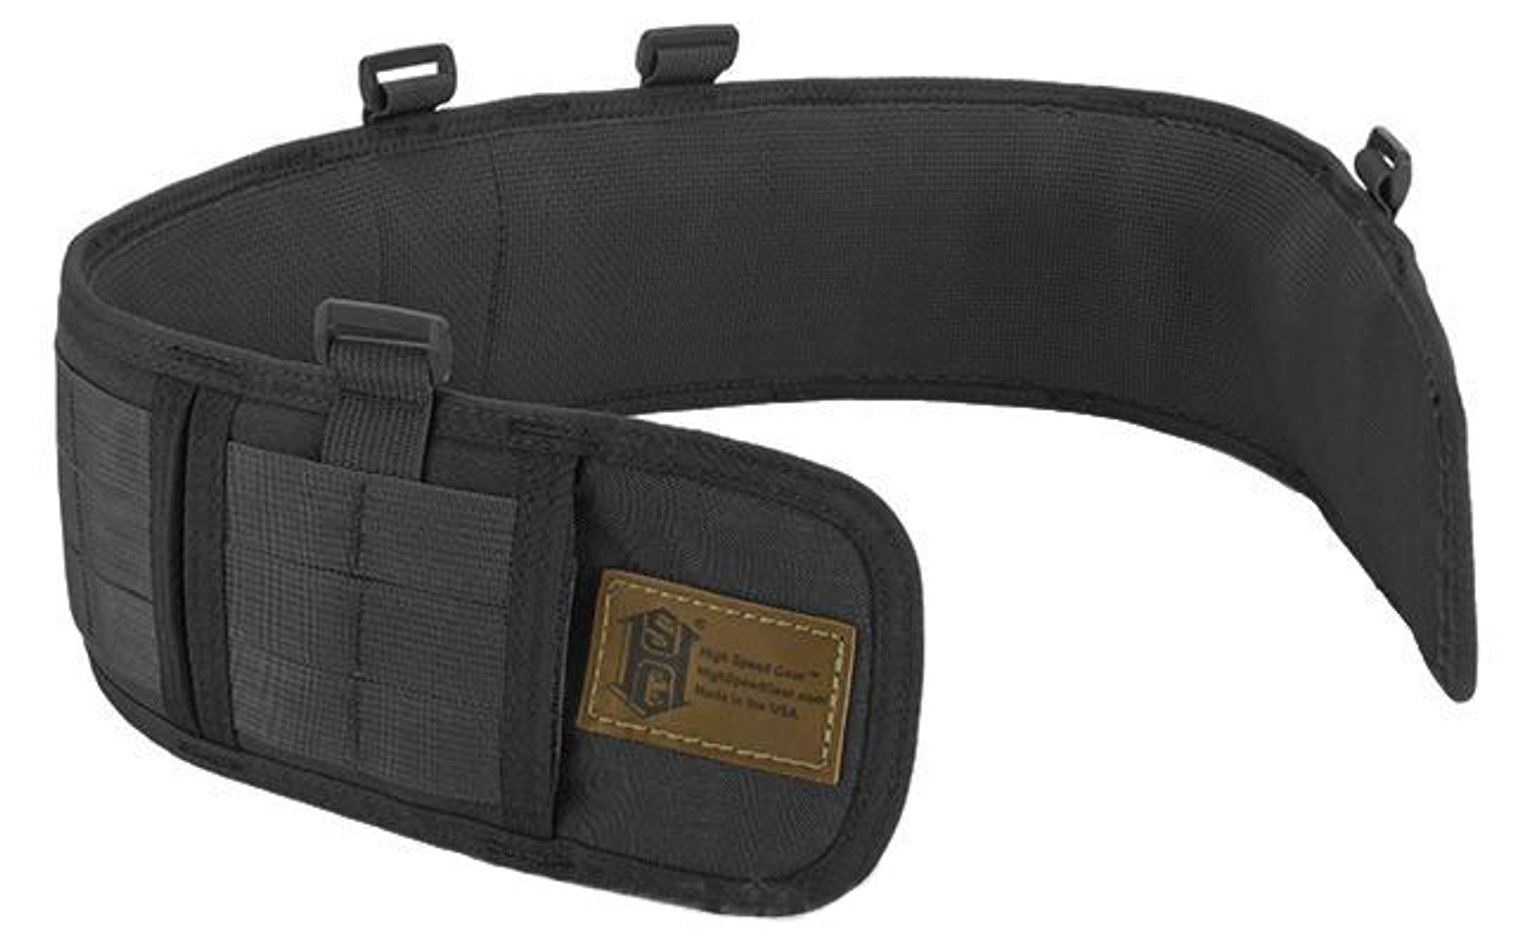 HSGI Slotted Sure-Grip Padded Duty Belt (Color: Black / Large 41.5")